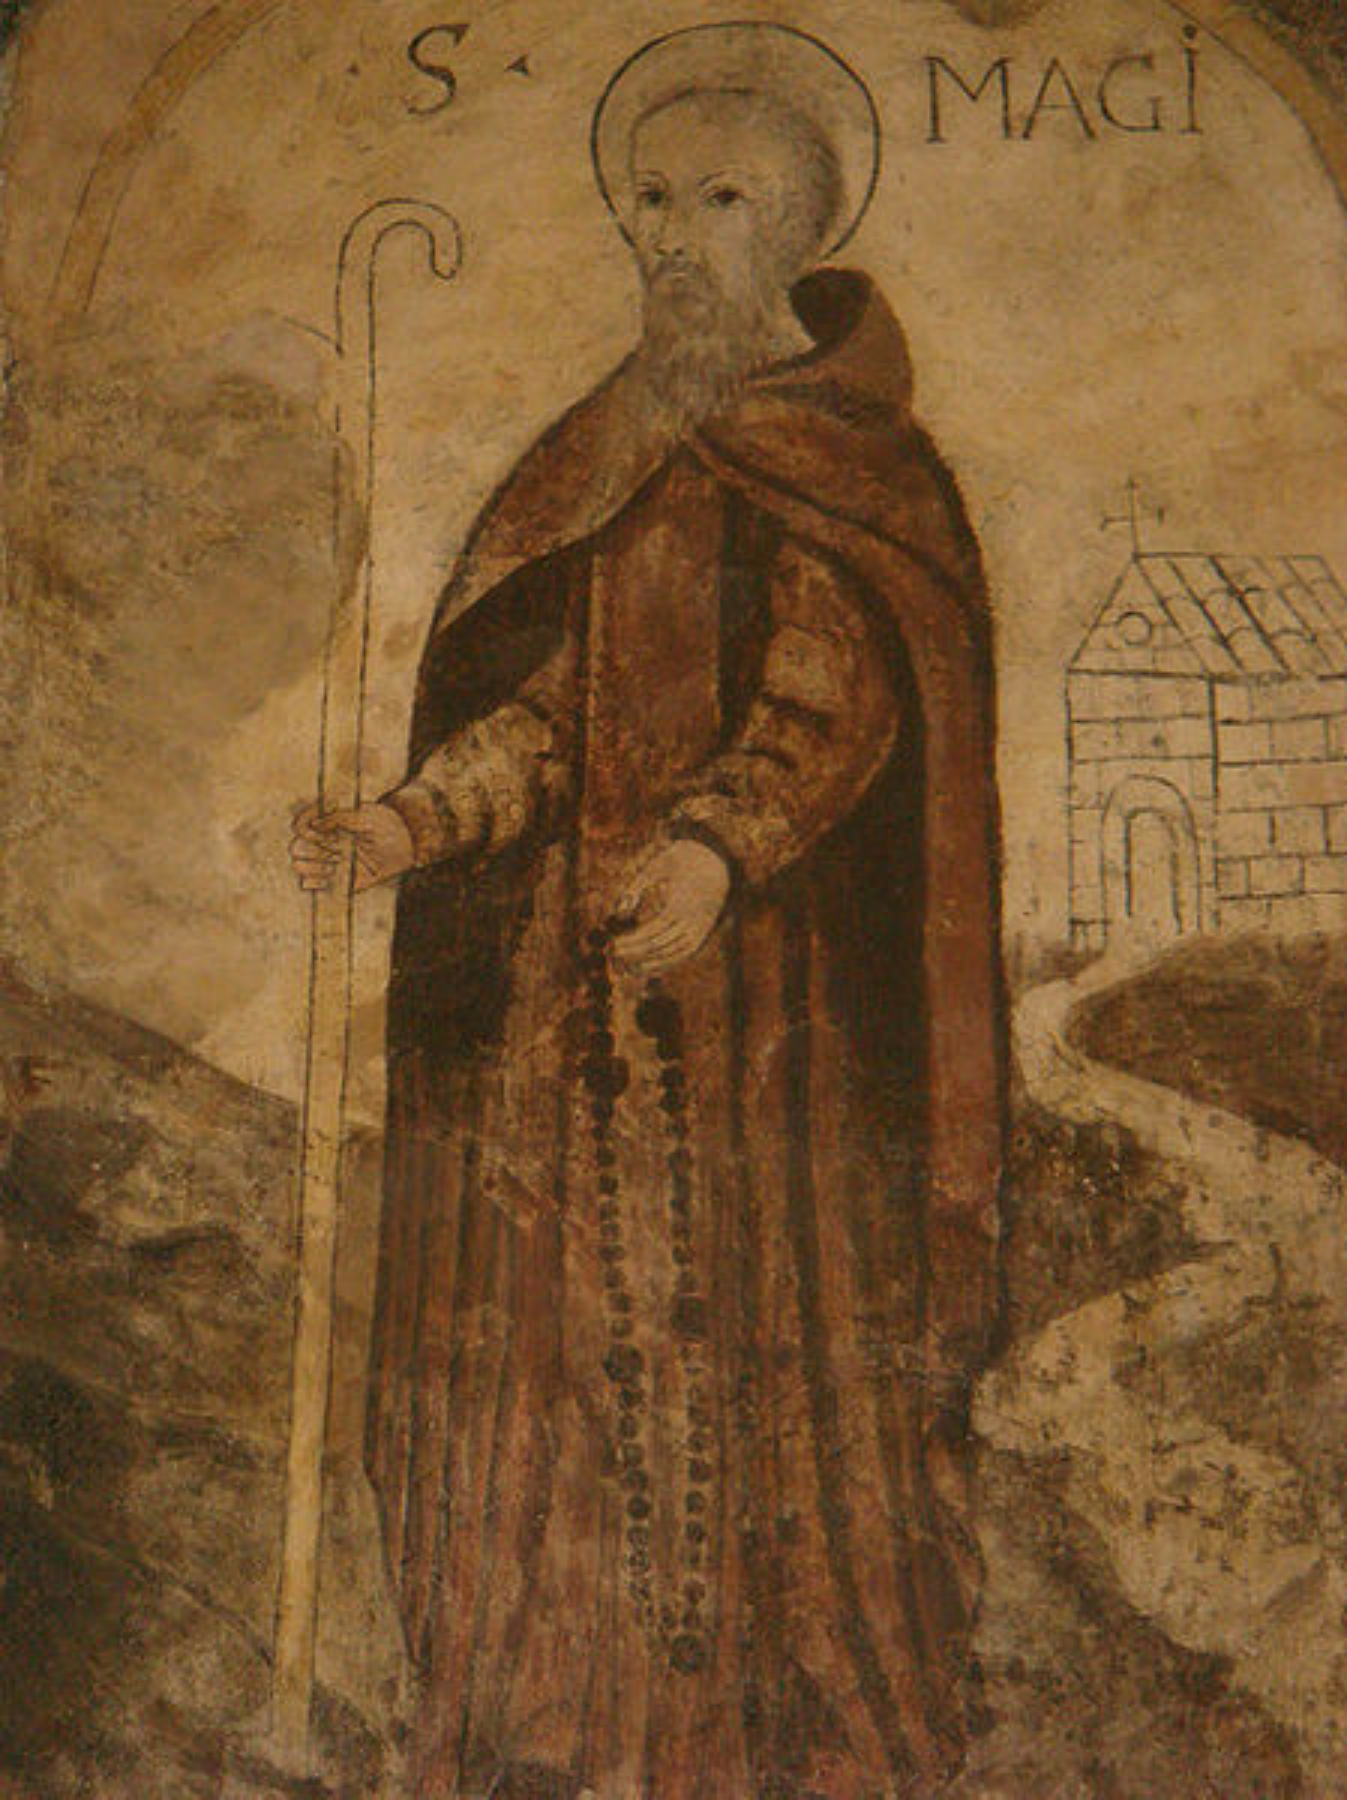 Els romans assassinen Sant Magí de Tarragona